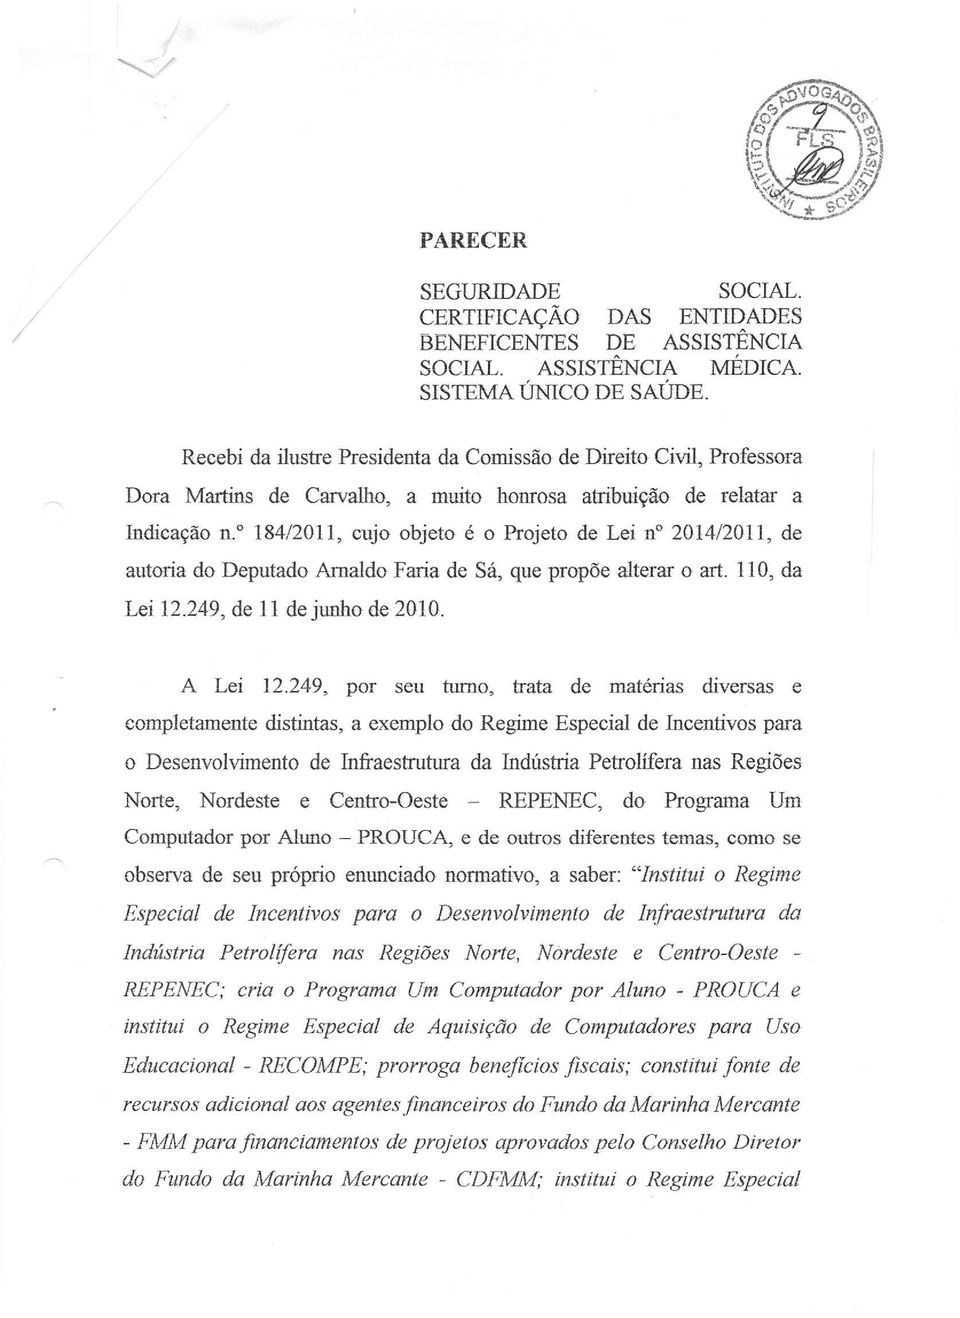 " 184/2011, cujo objeto é o Projeto de Lei n 201412011, de autoria do Deputado Amaldo Faria de Sá, que propõe alterar o art. 110, da Lei 12.